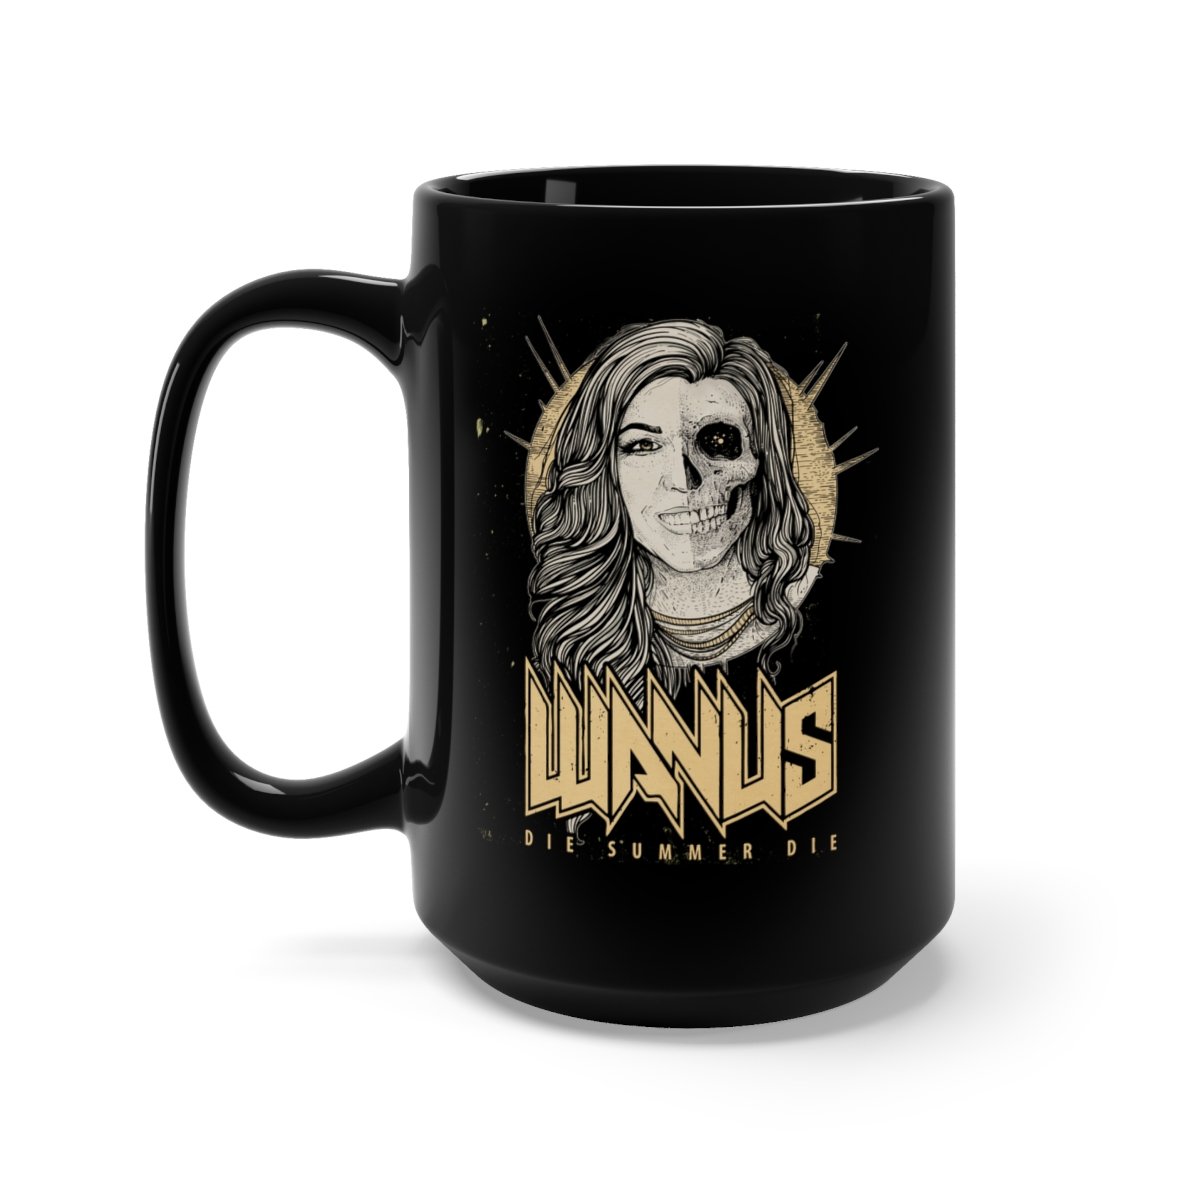 Wanus – Die Summer Die 15oz Black Mug